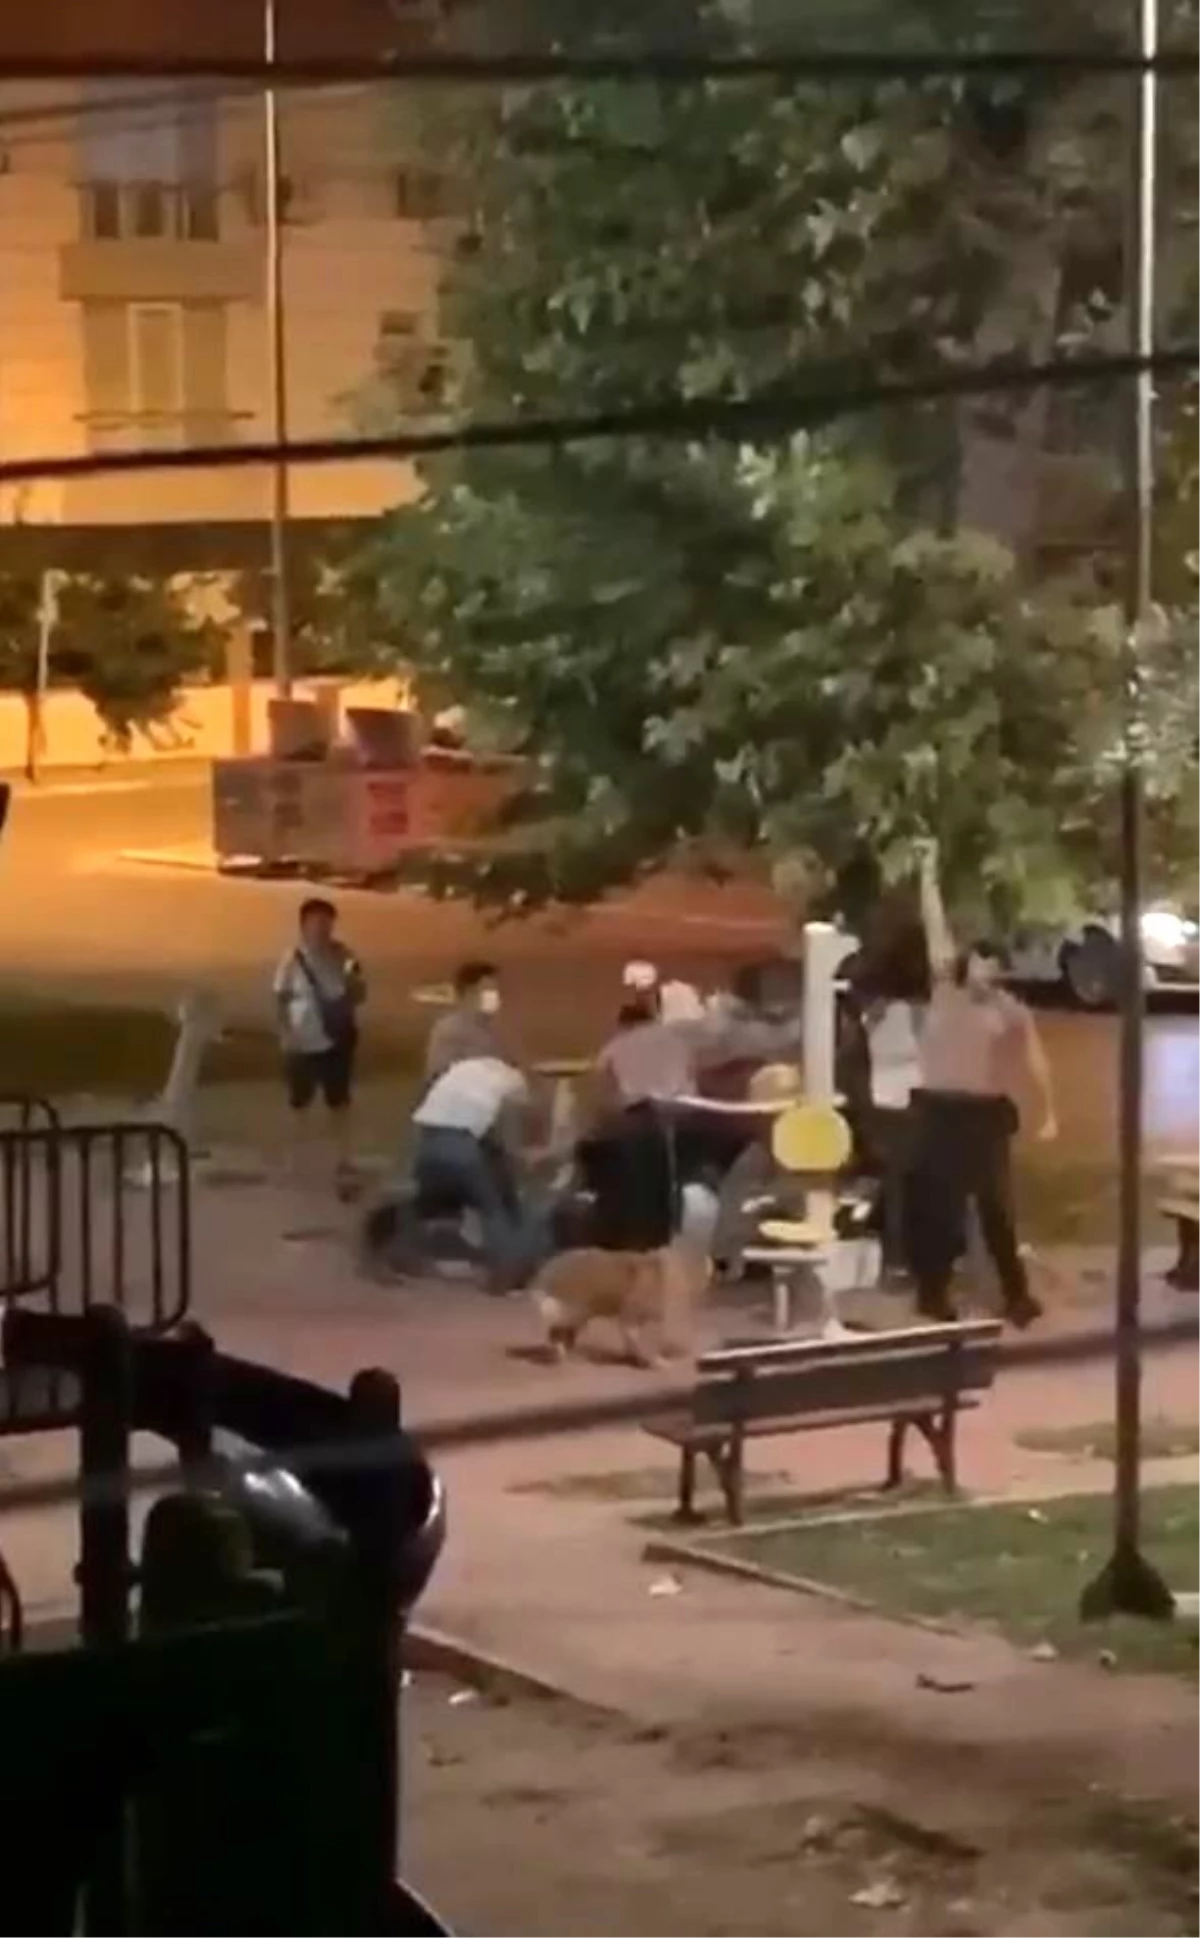 Parktaki kavga, bekçinin havaya ateş açmasıyla sonlandı